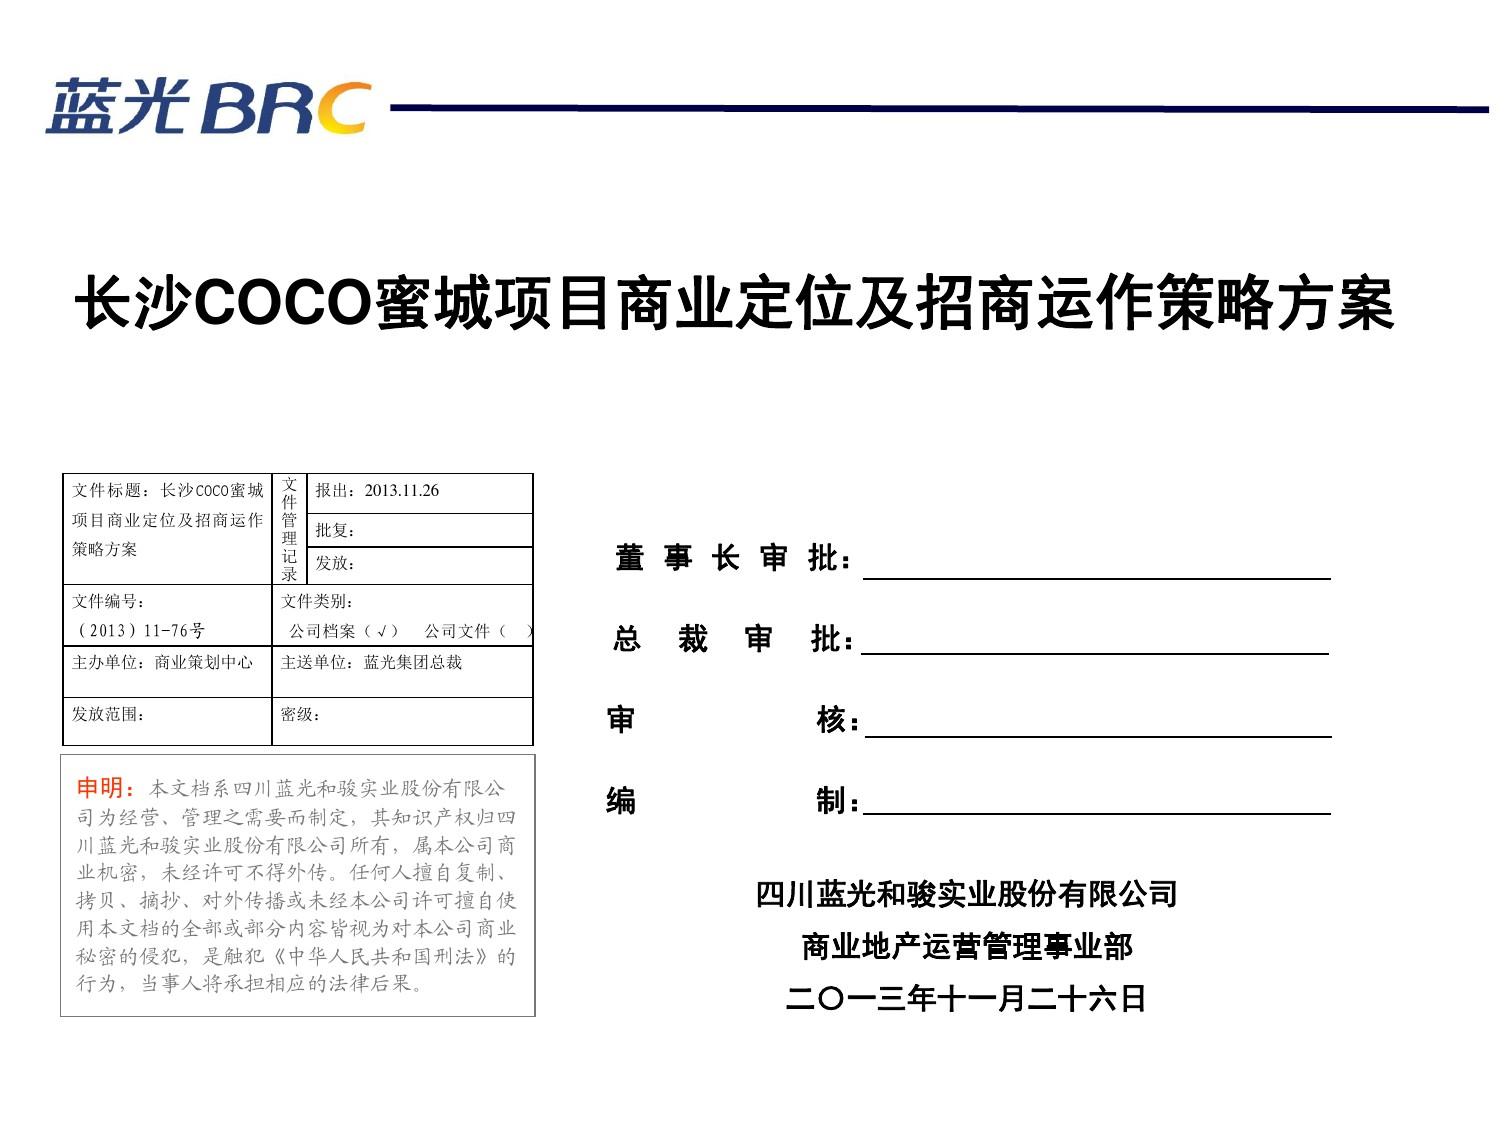 长沙coco蜜城项目商业定位及招商运作策略方案